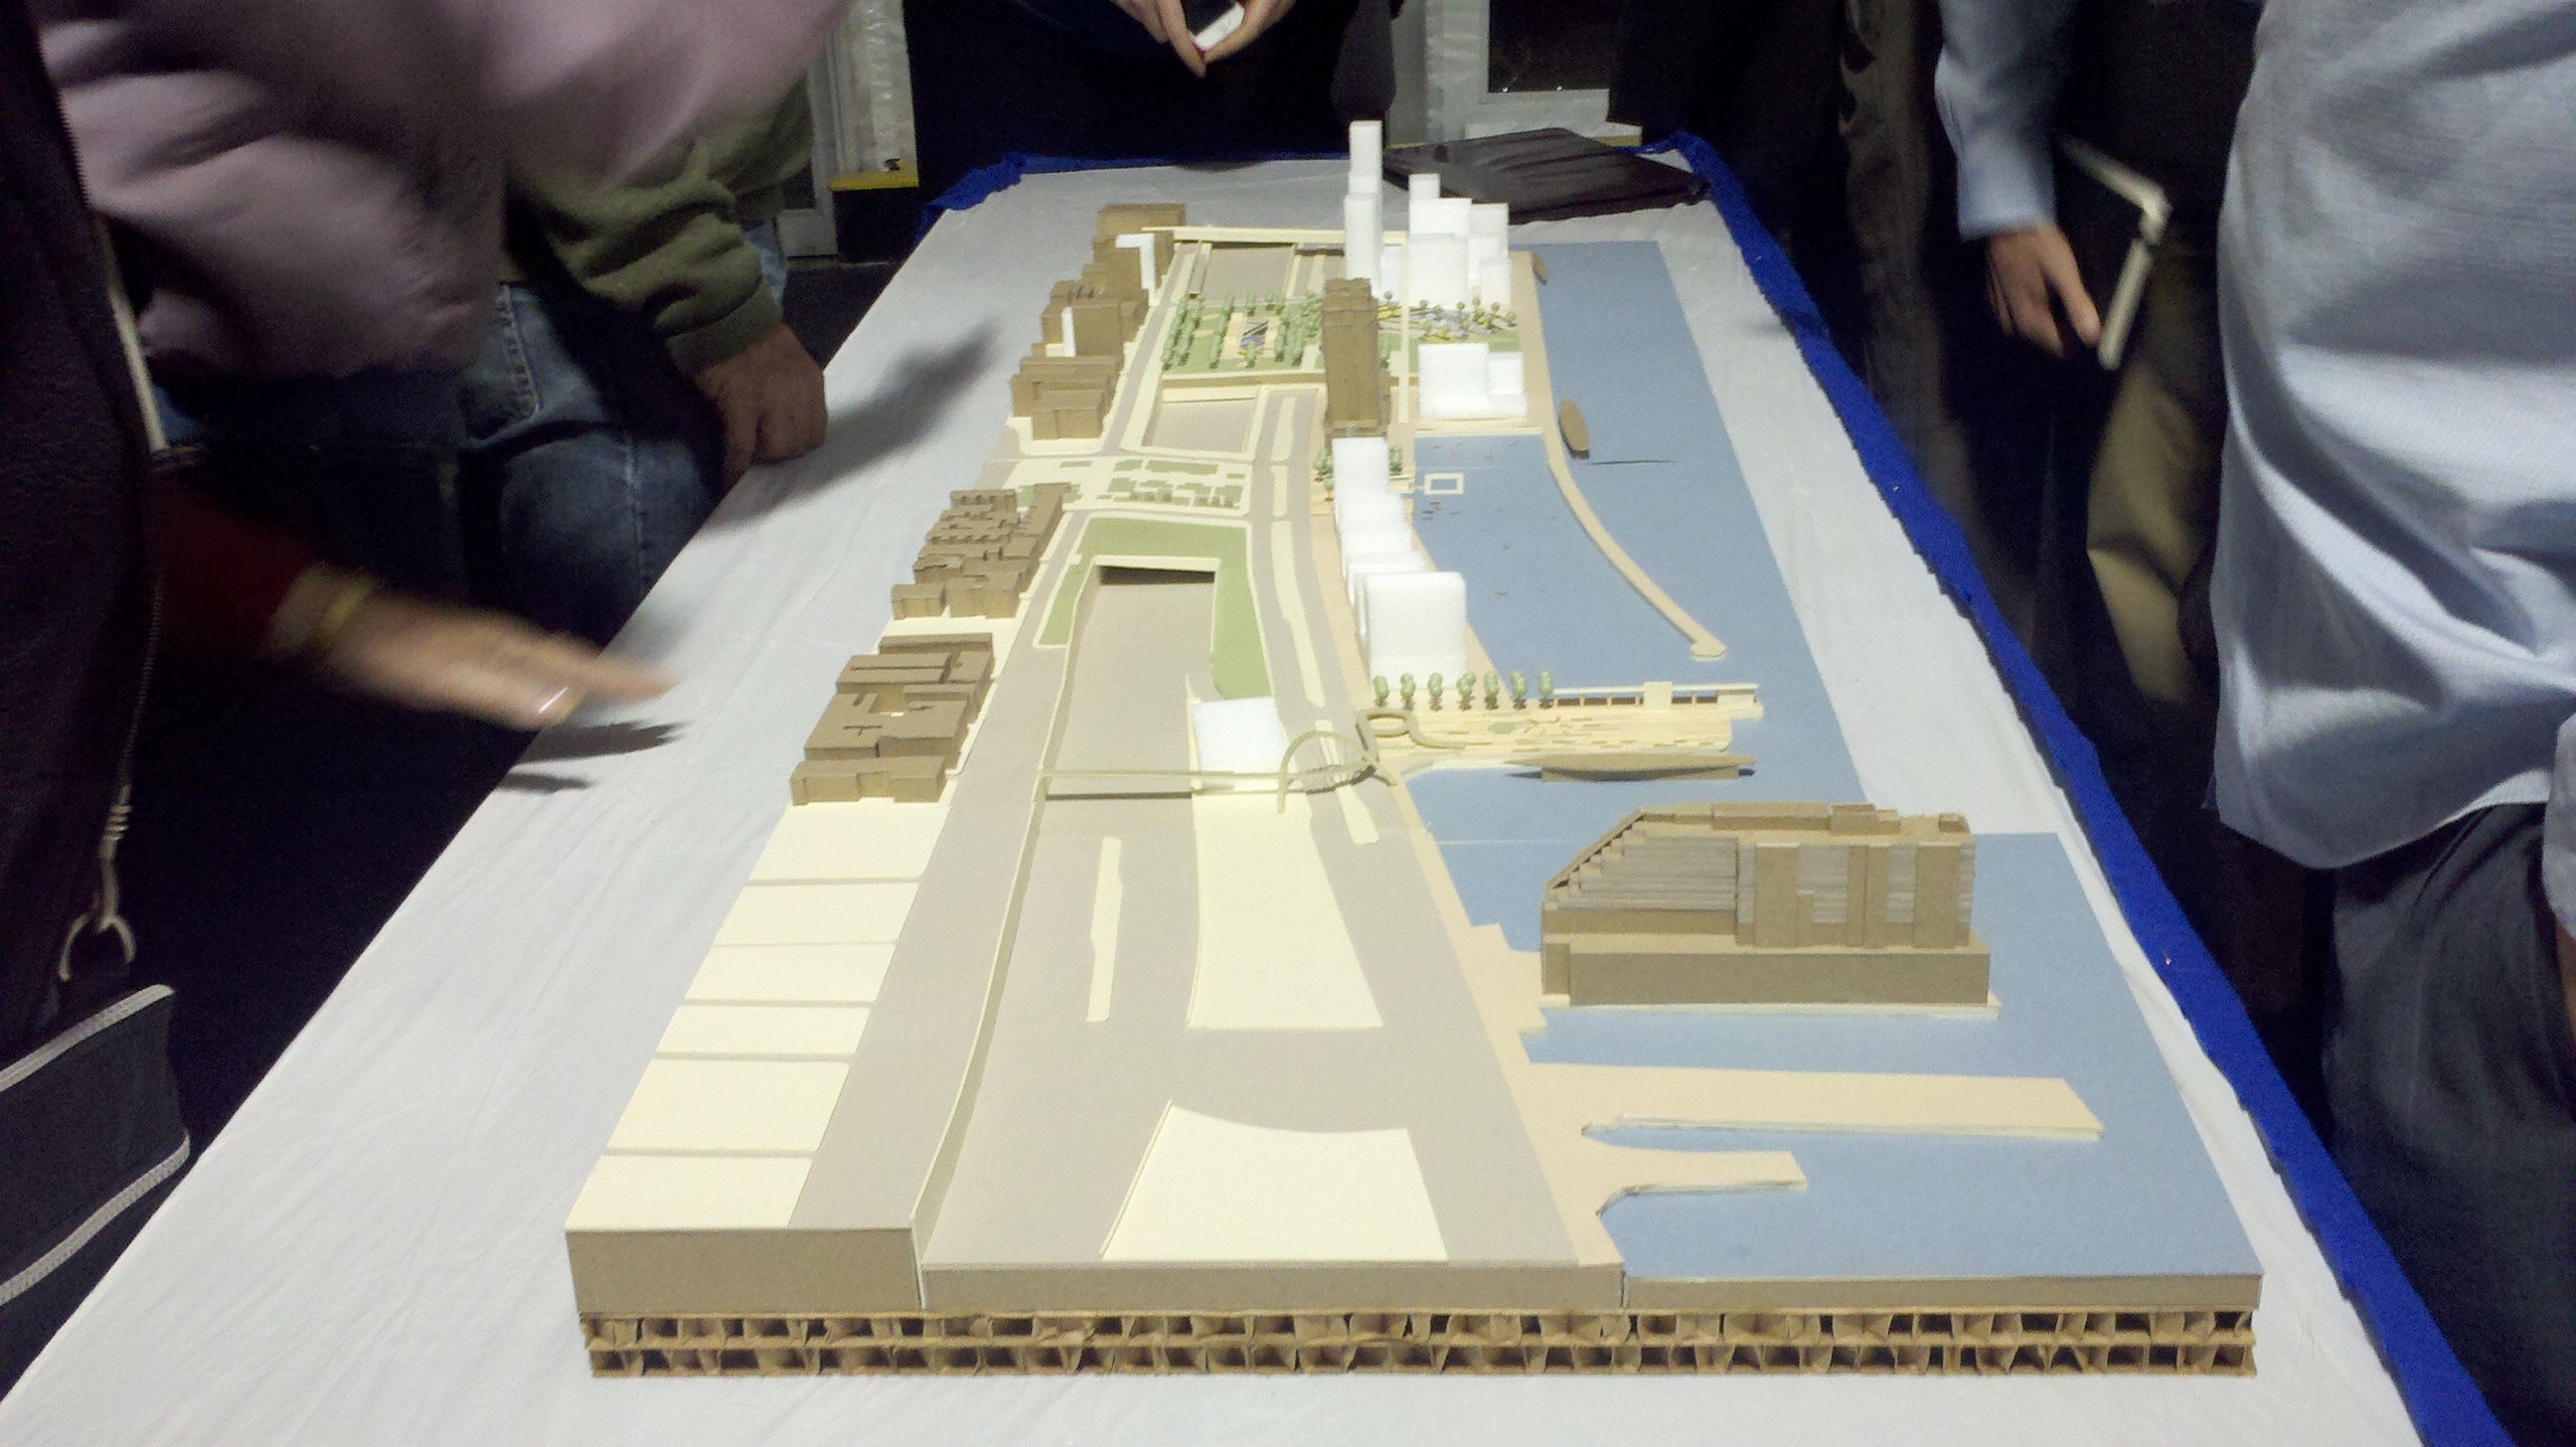 Hargreaves' three-dimensional model for Penn's Landing